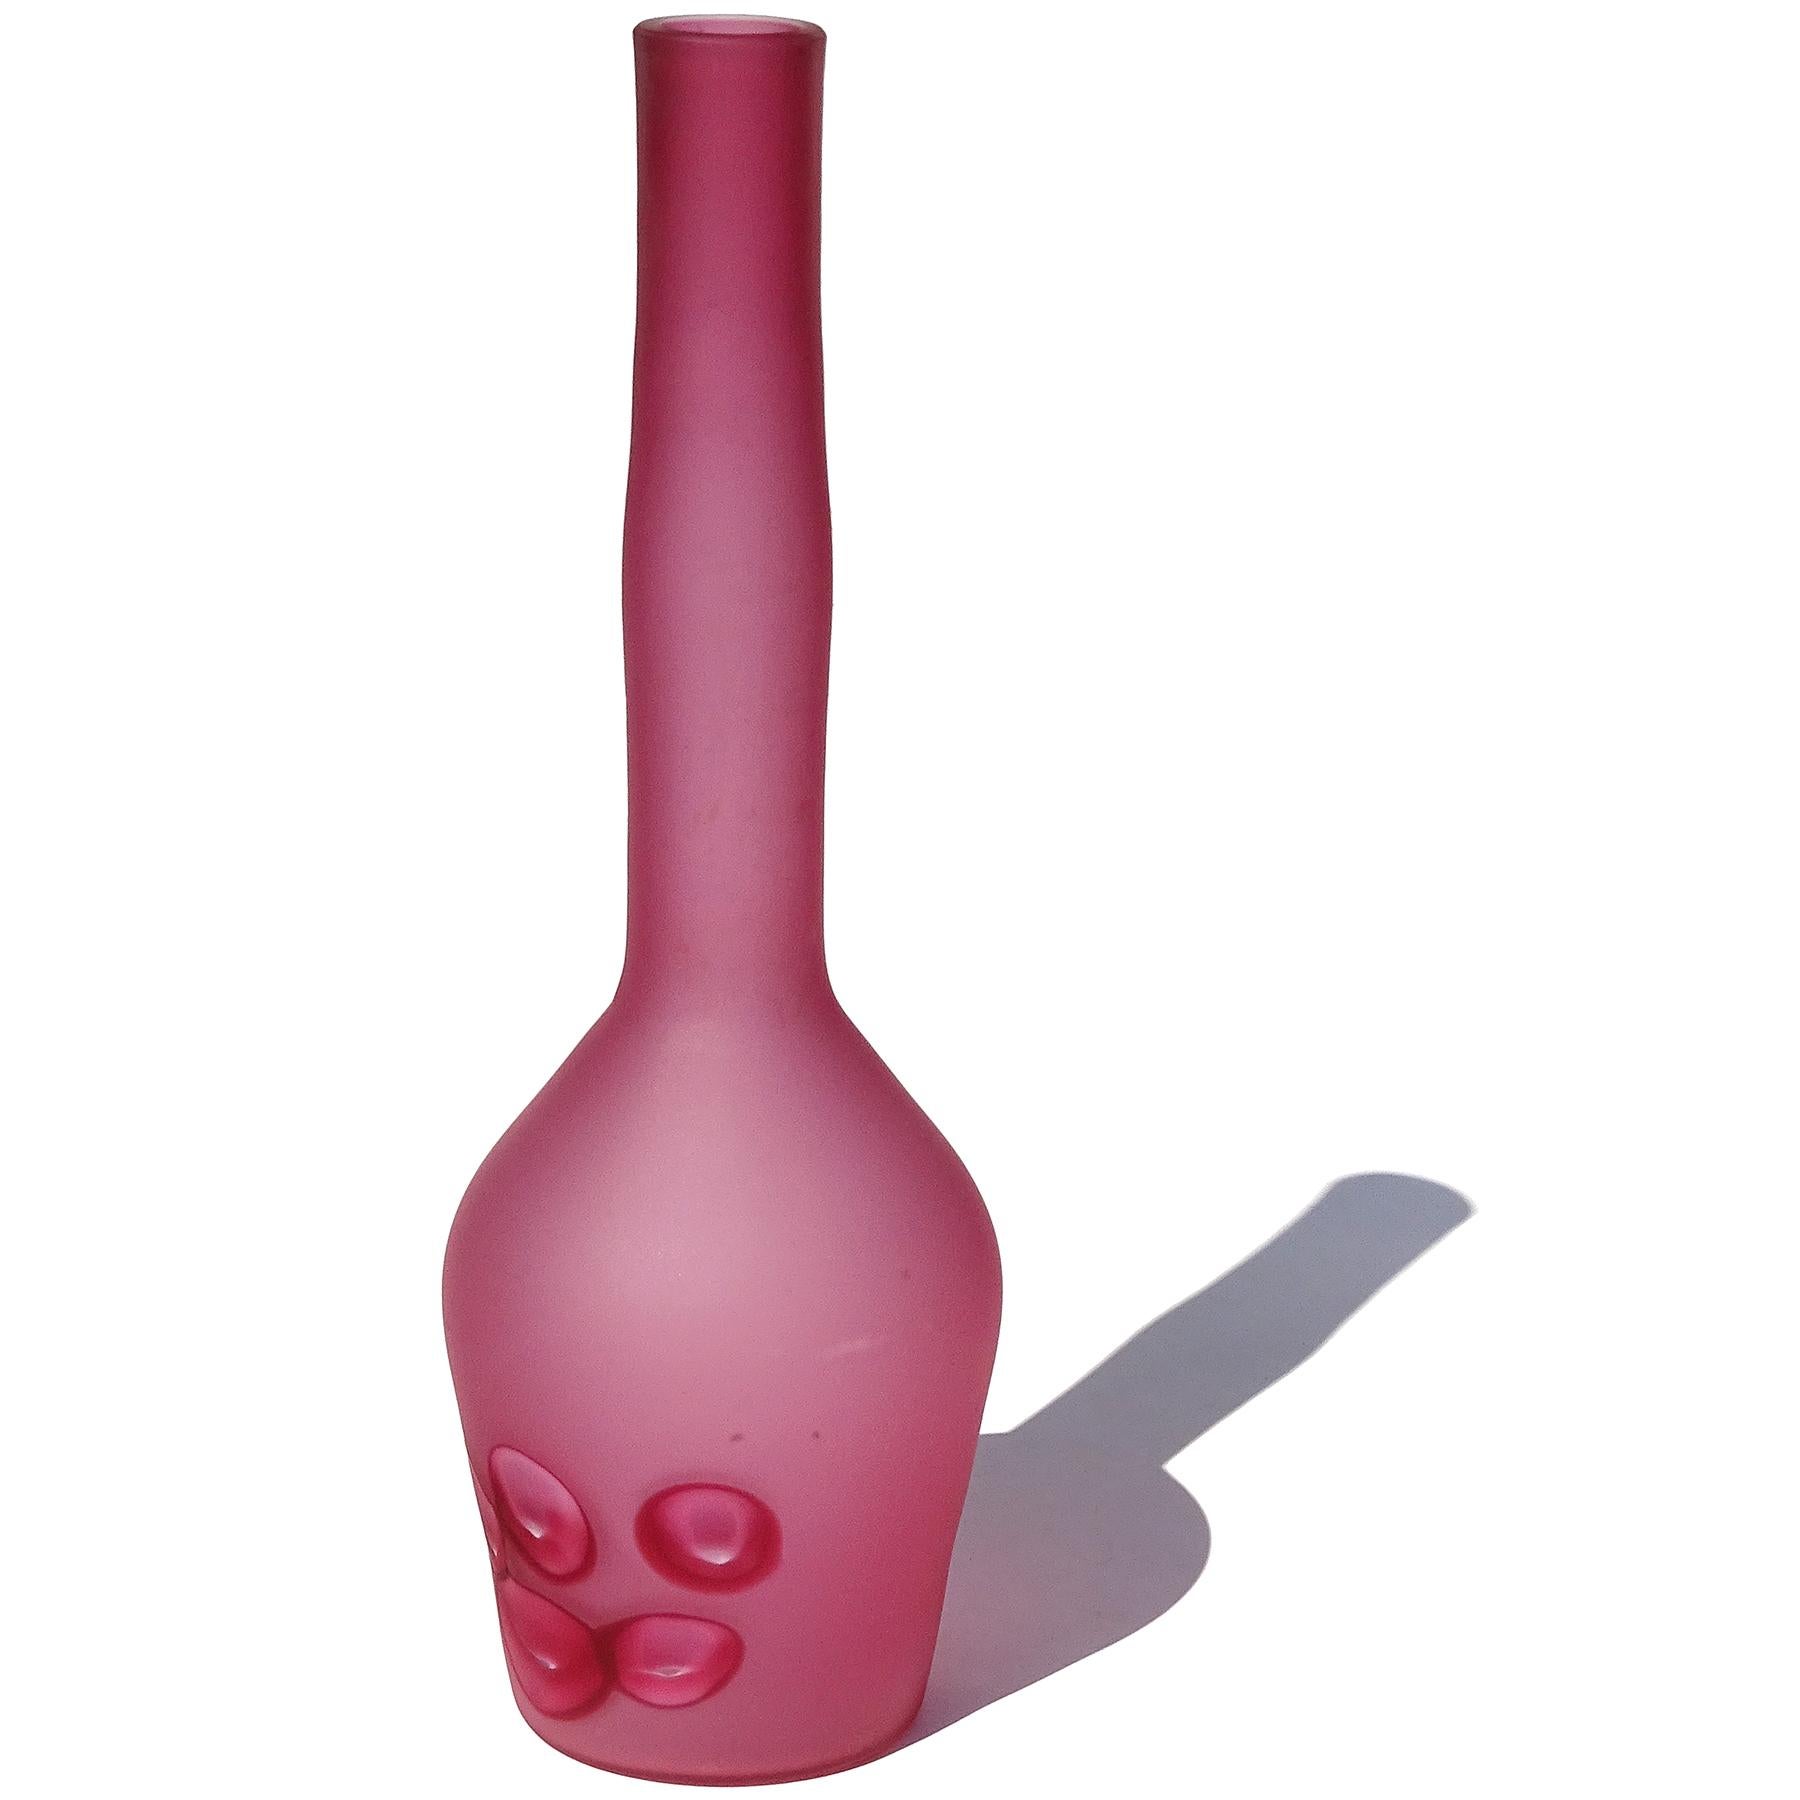 Magnifique et rare, vintage Murano soufflé à la main rose foncé surface satinée et coupé murrines verre d'art italien fleur vase / bouteille. Document remis au designer Ermanno Toso, pour la société Fratelli Toso. Le vase est créé selon le modèle 